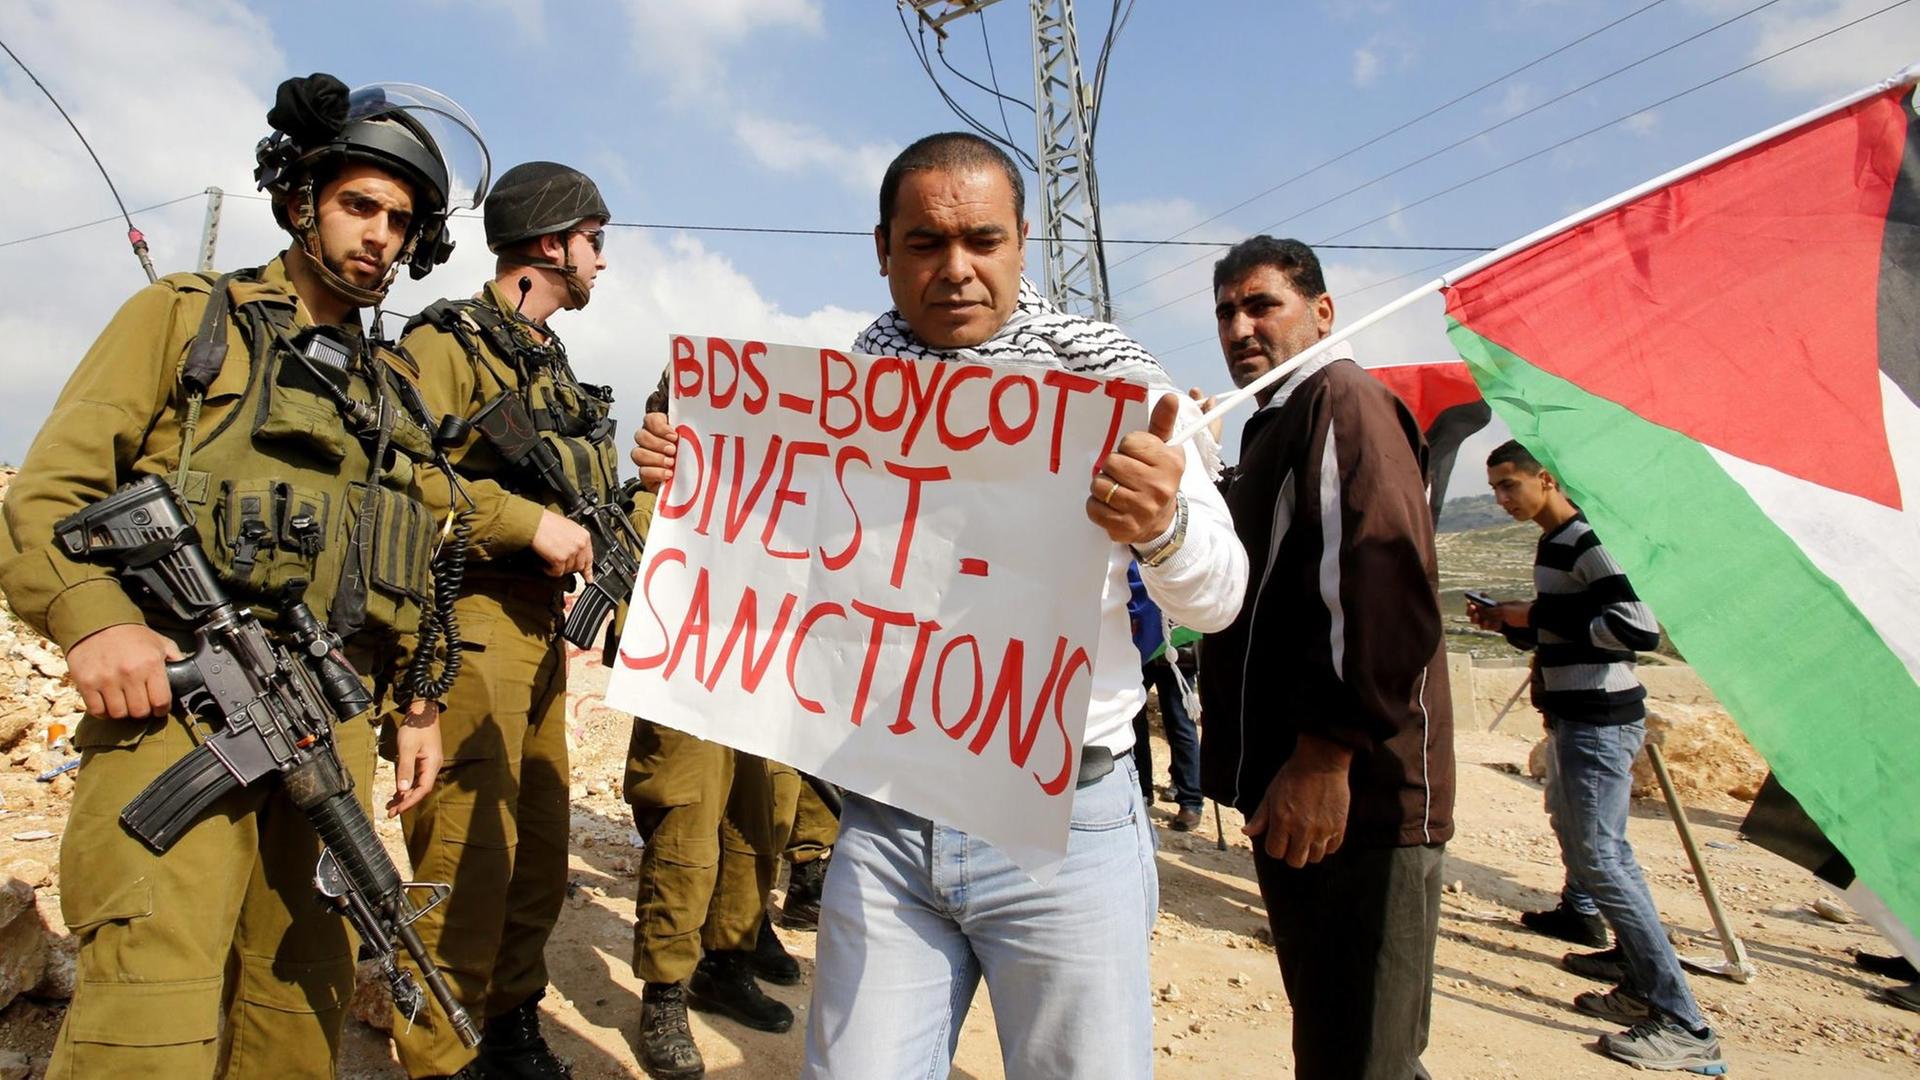 Palästinensische Demonstranten mit Plakate, die sich auf die BDS-Bewegung (Boycott, Divestment and Sanctions) beziehen.